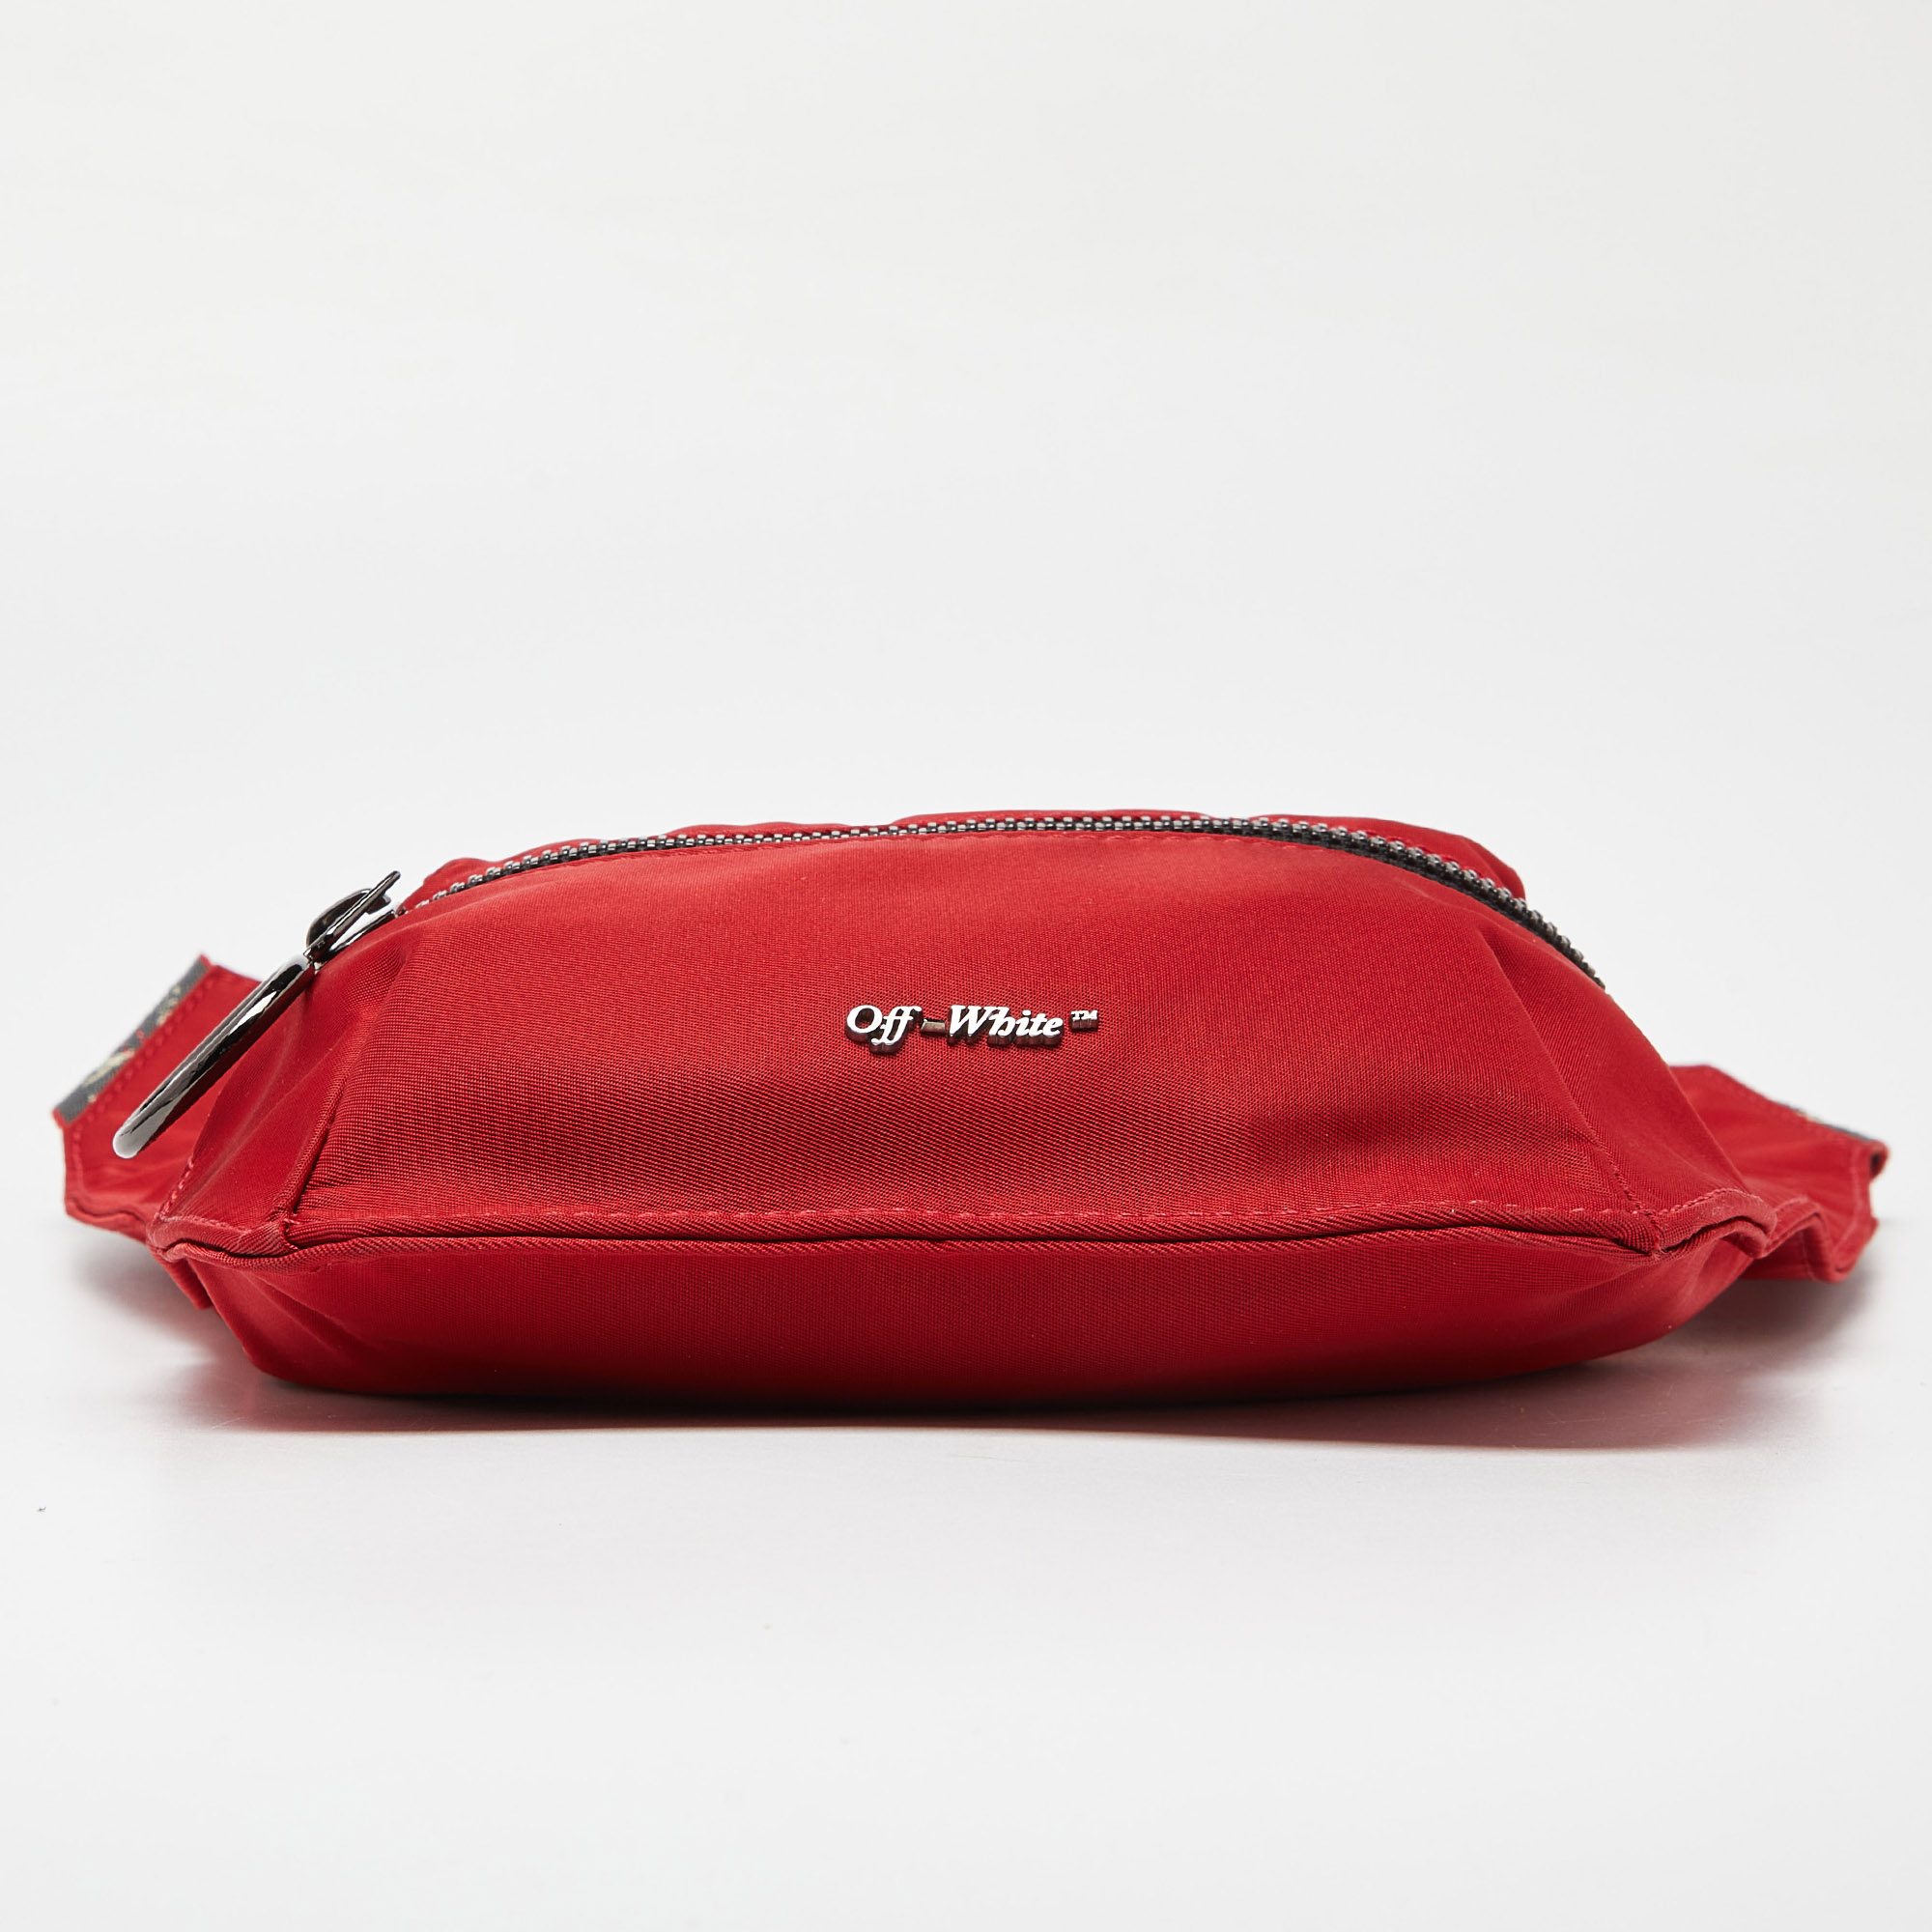 Off-White Red Nylon Messenger Bag